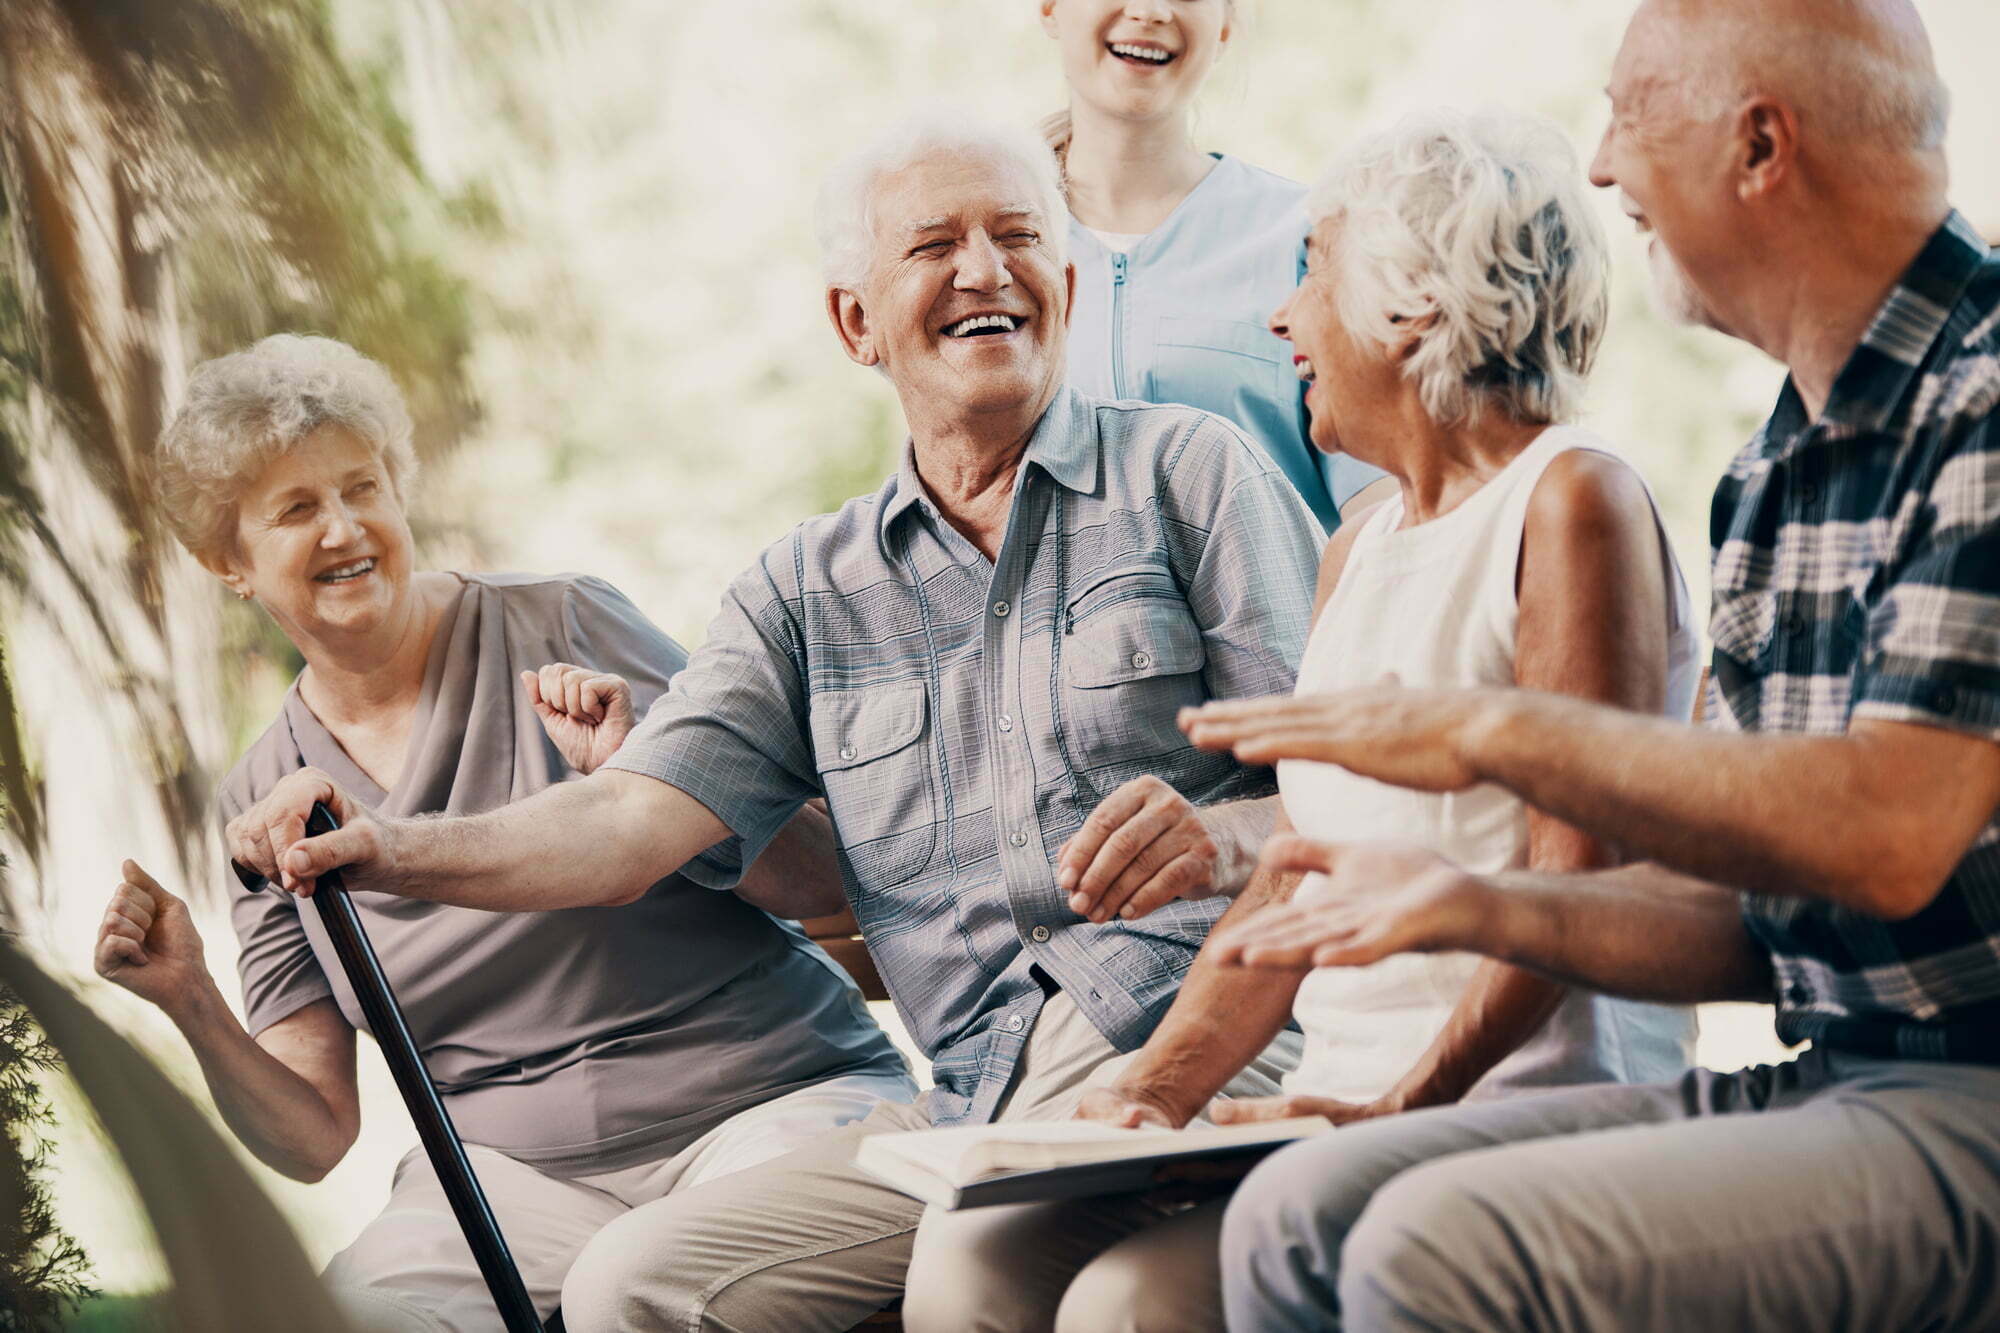 Fire smilende eldre mennesker ser på hverandre, ler og koser seg på en benk ute. En sykepleier står i bakgrunn og ser på de.